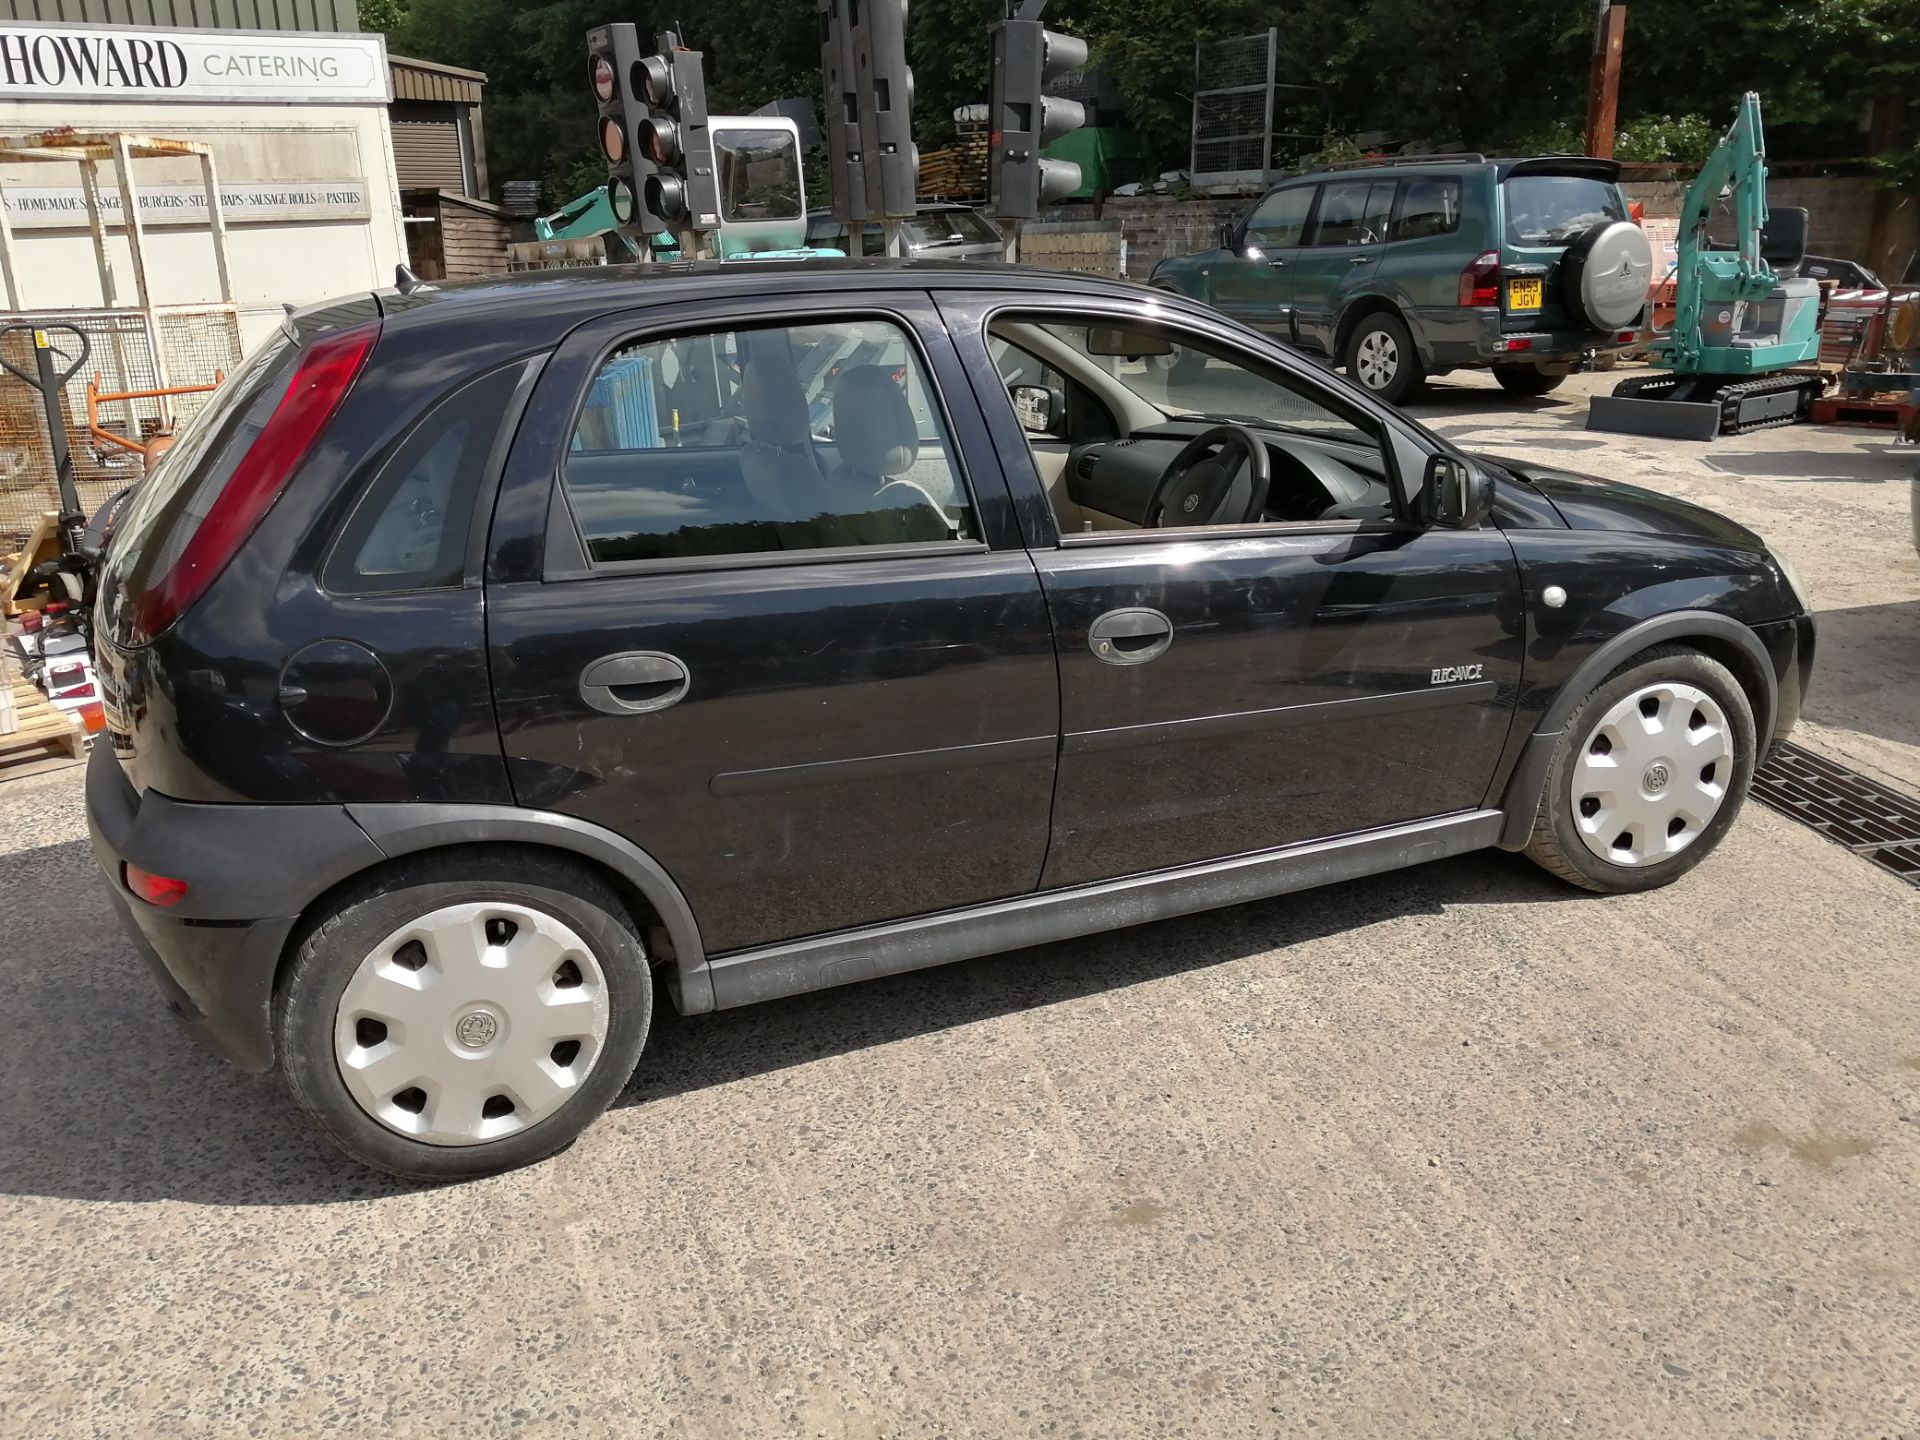 03/03 Vauxhall Corsa Elegance 16V - 1389cc 5dr Hatchback (Black, 86k) - Image 4 of 5